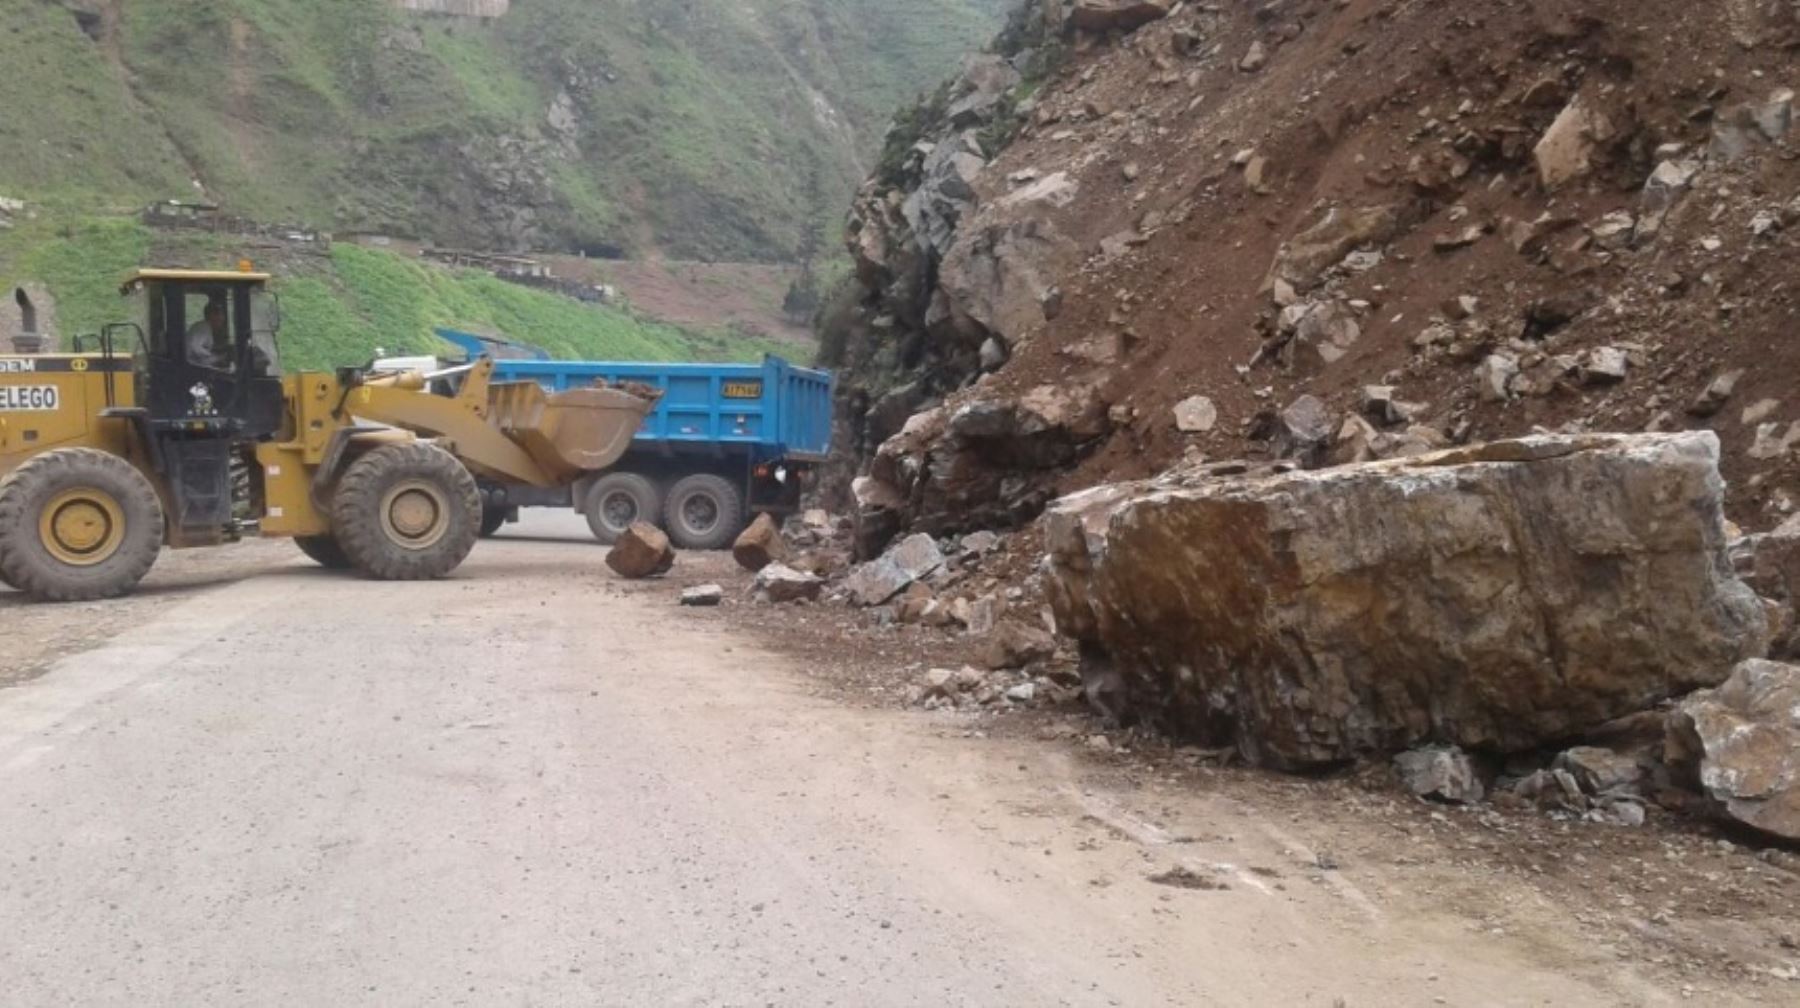 El tránsito vehicular en el kilómetro 86 de la Carretera Central, en el tramo San Mateo-Chicla, en la provincia de Huarochirí, quedó restringido nuevamente debido al desprendimiento de rocas en la vía producto de las precipitaciones, informó el Centro de Operaciones de Emergencia Nacional (COEN).